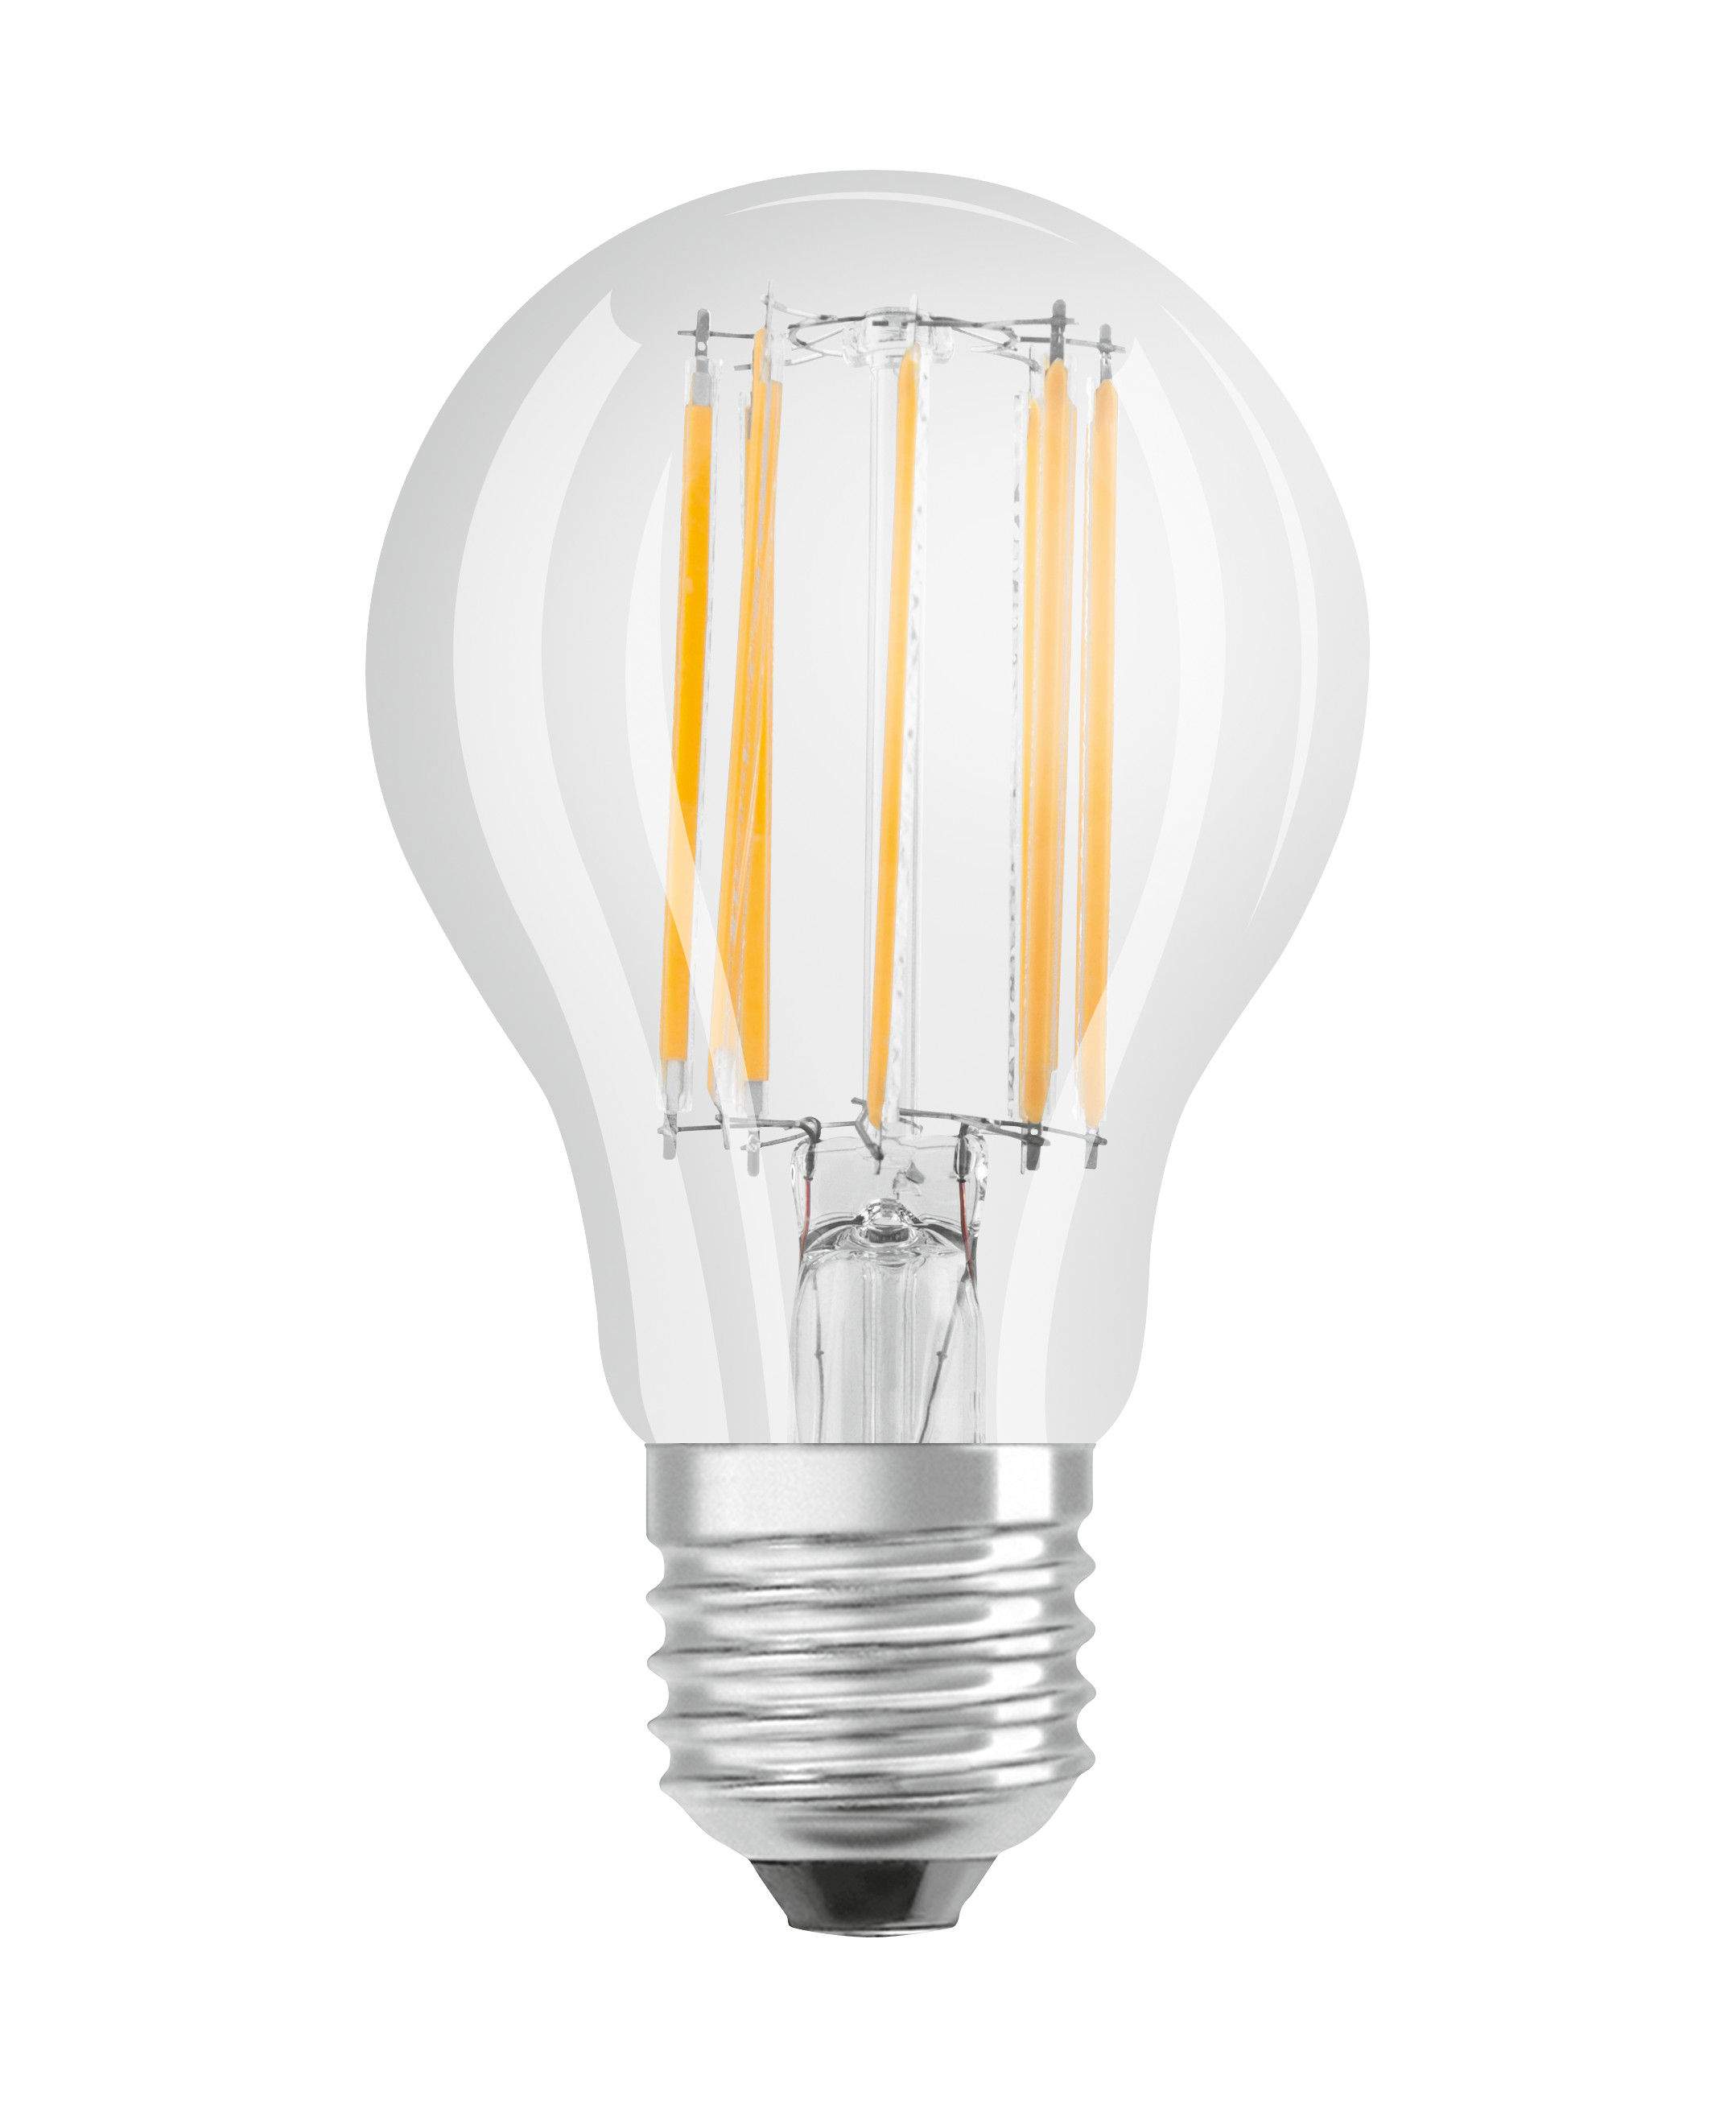 E27 standard clear glass LED bulb, 11W, cool white.